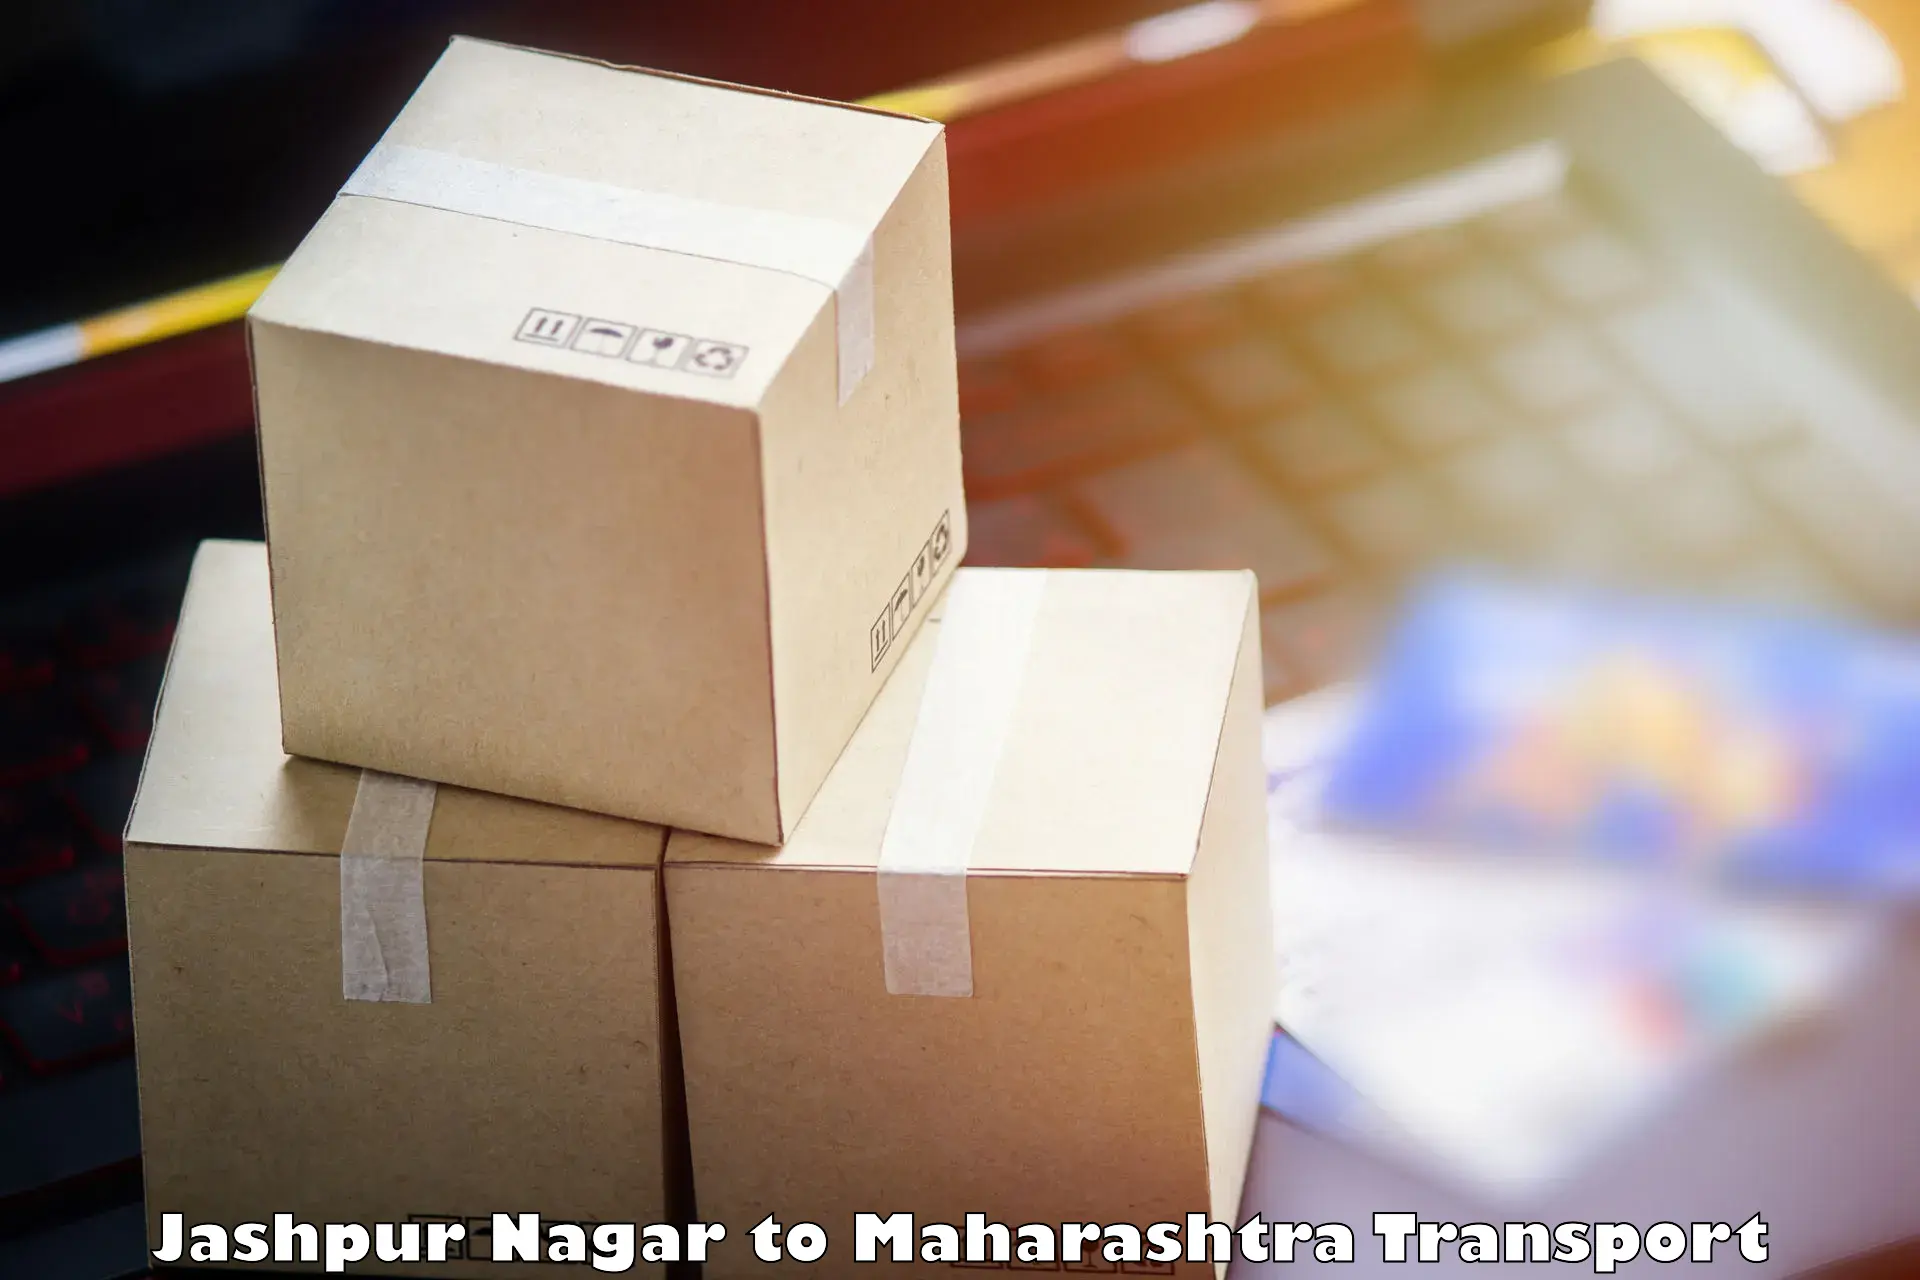 Transportation services Jashpur Nagar to Maharashtra